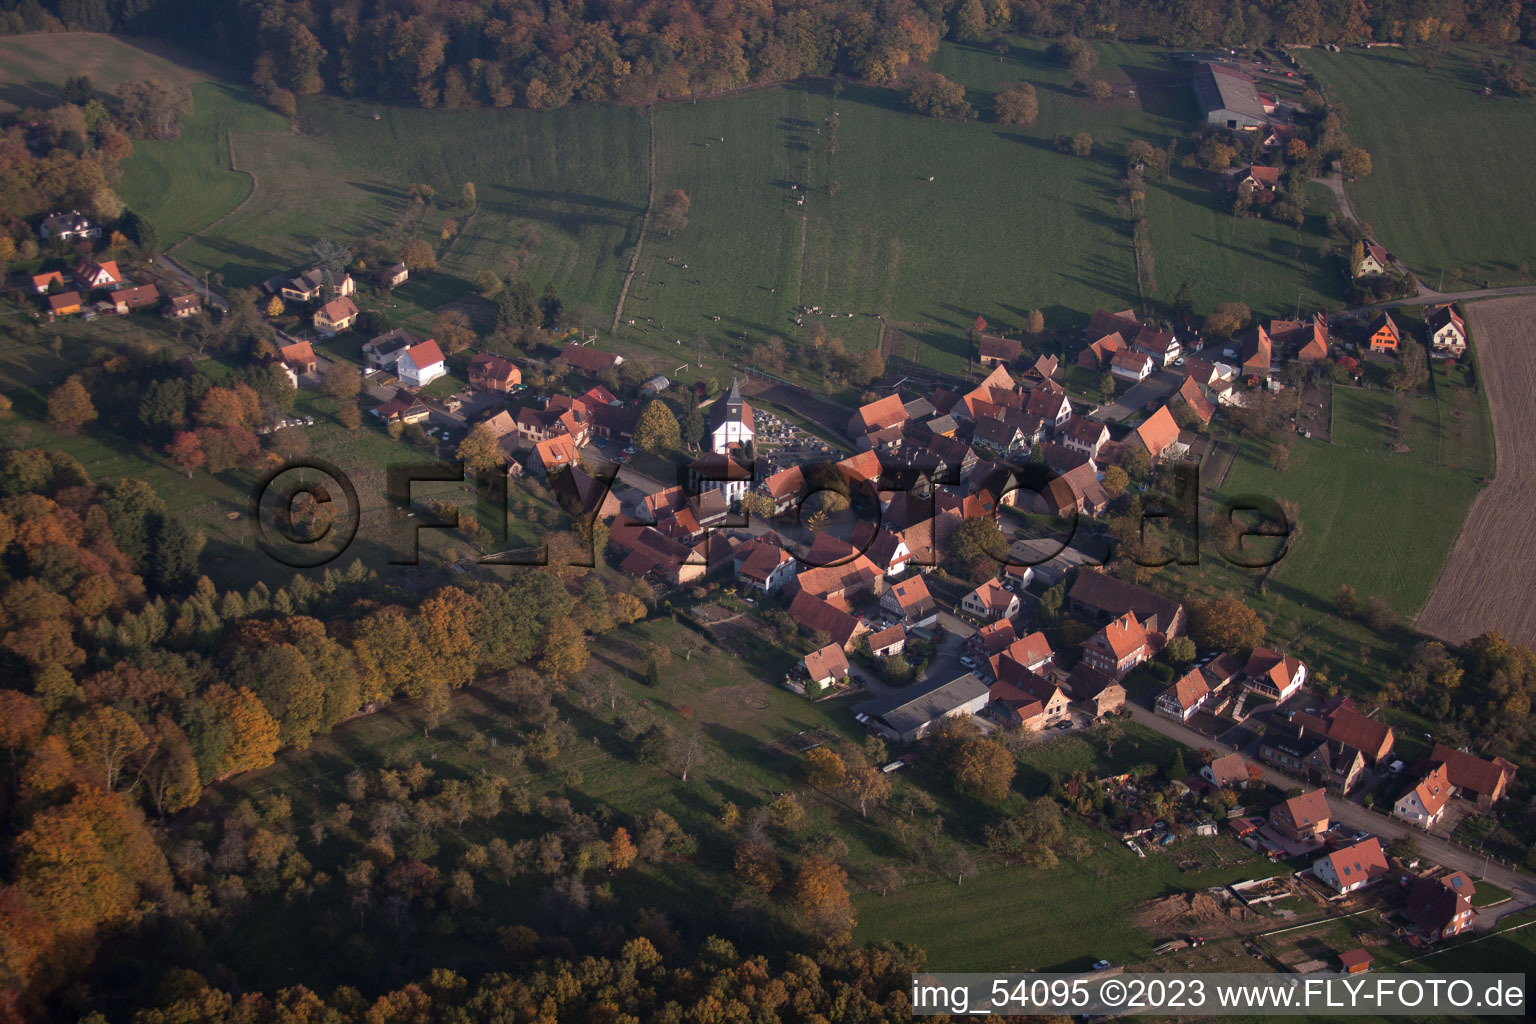 Mattstall im Bundesland Bas-Rhin, Frankreich aus der Luft betrachtet